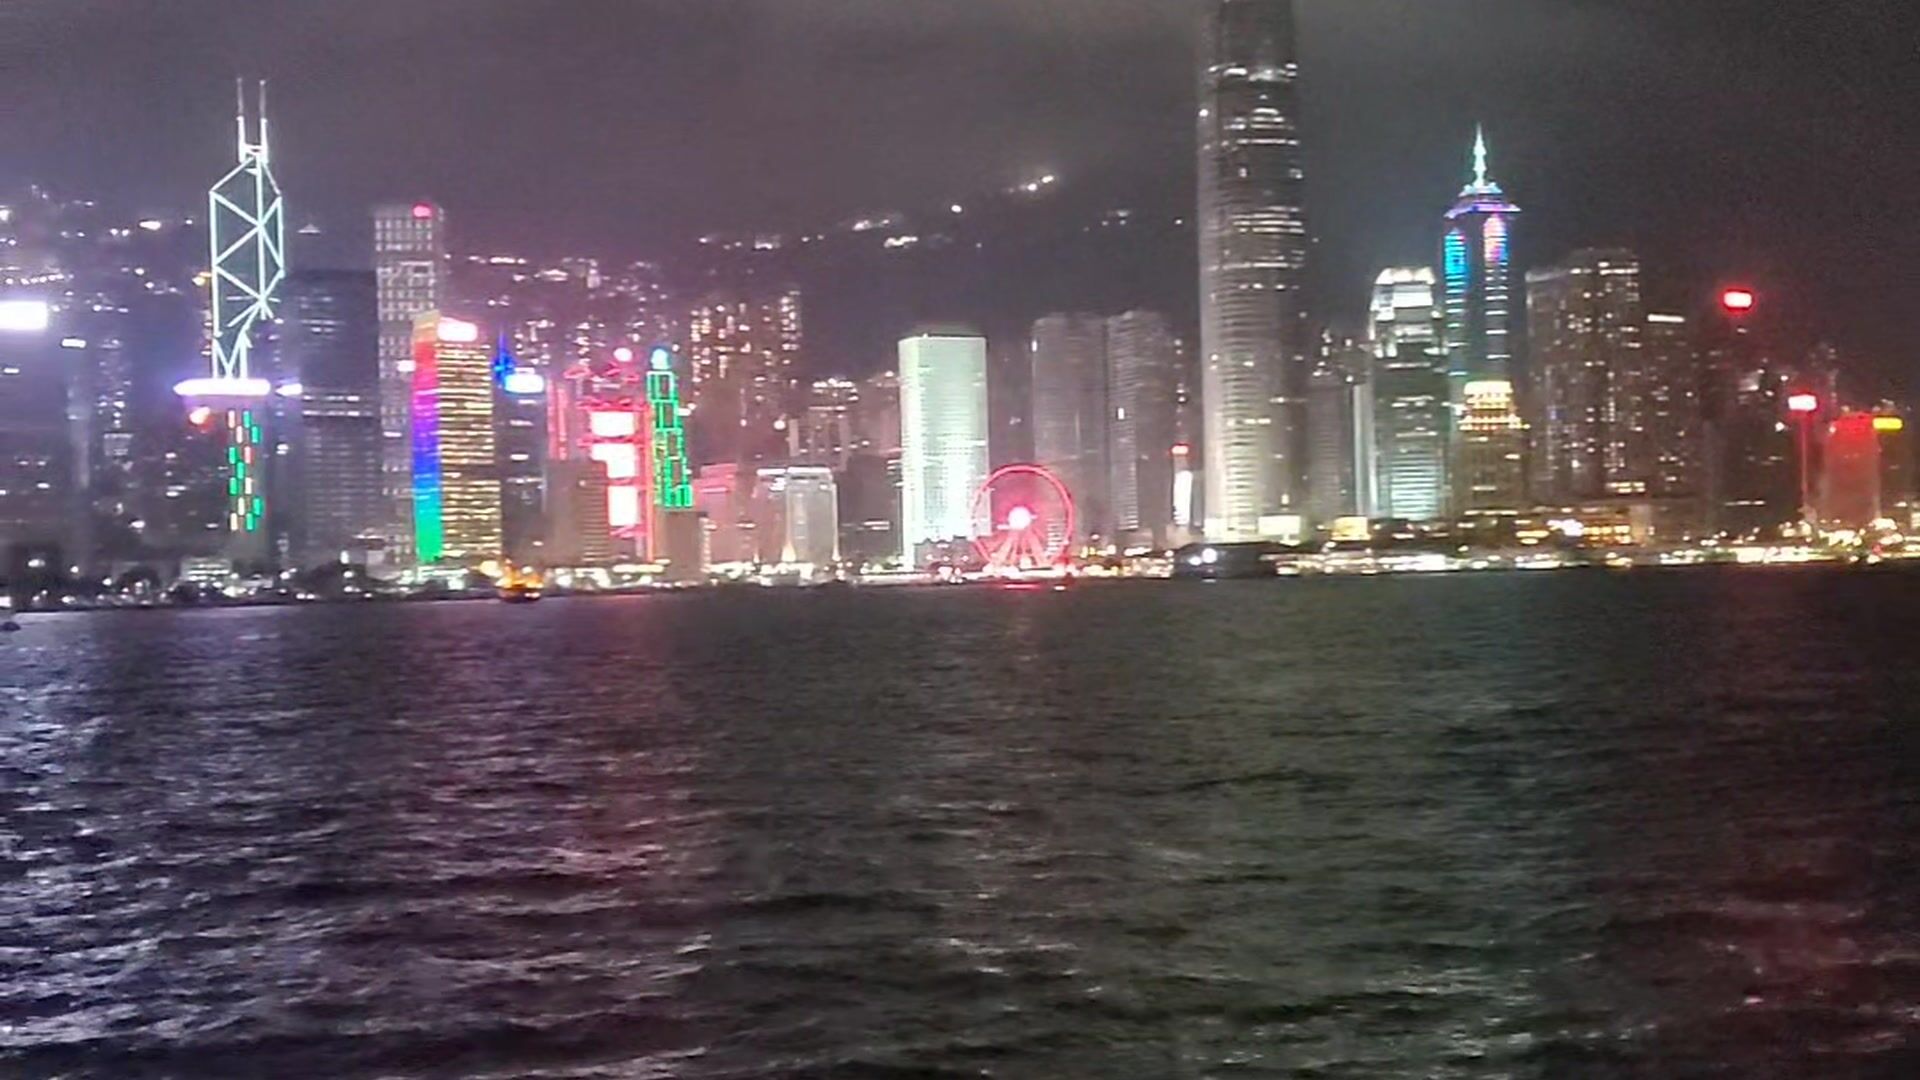 My love Hong Kong